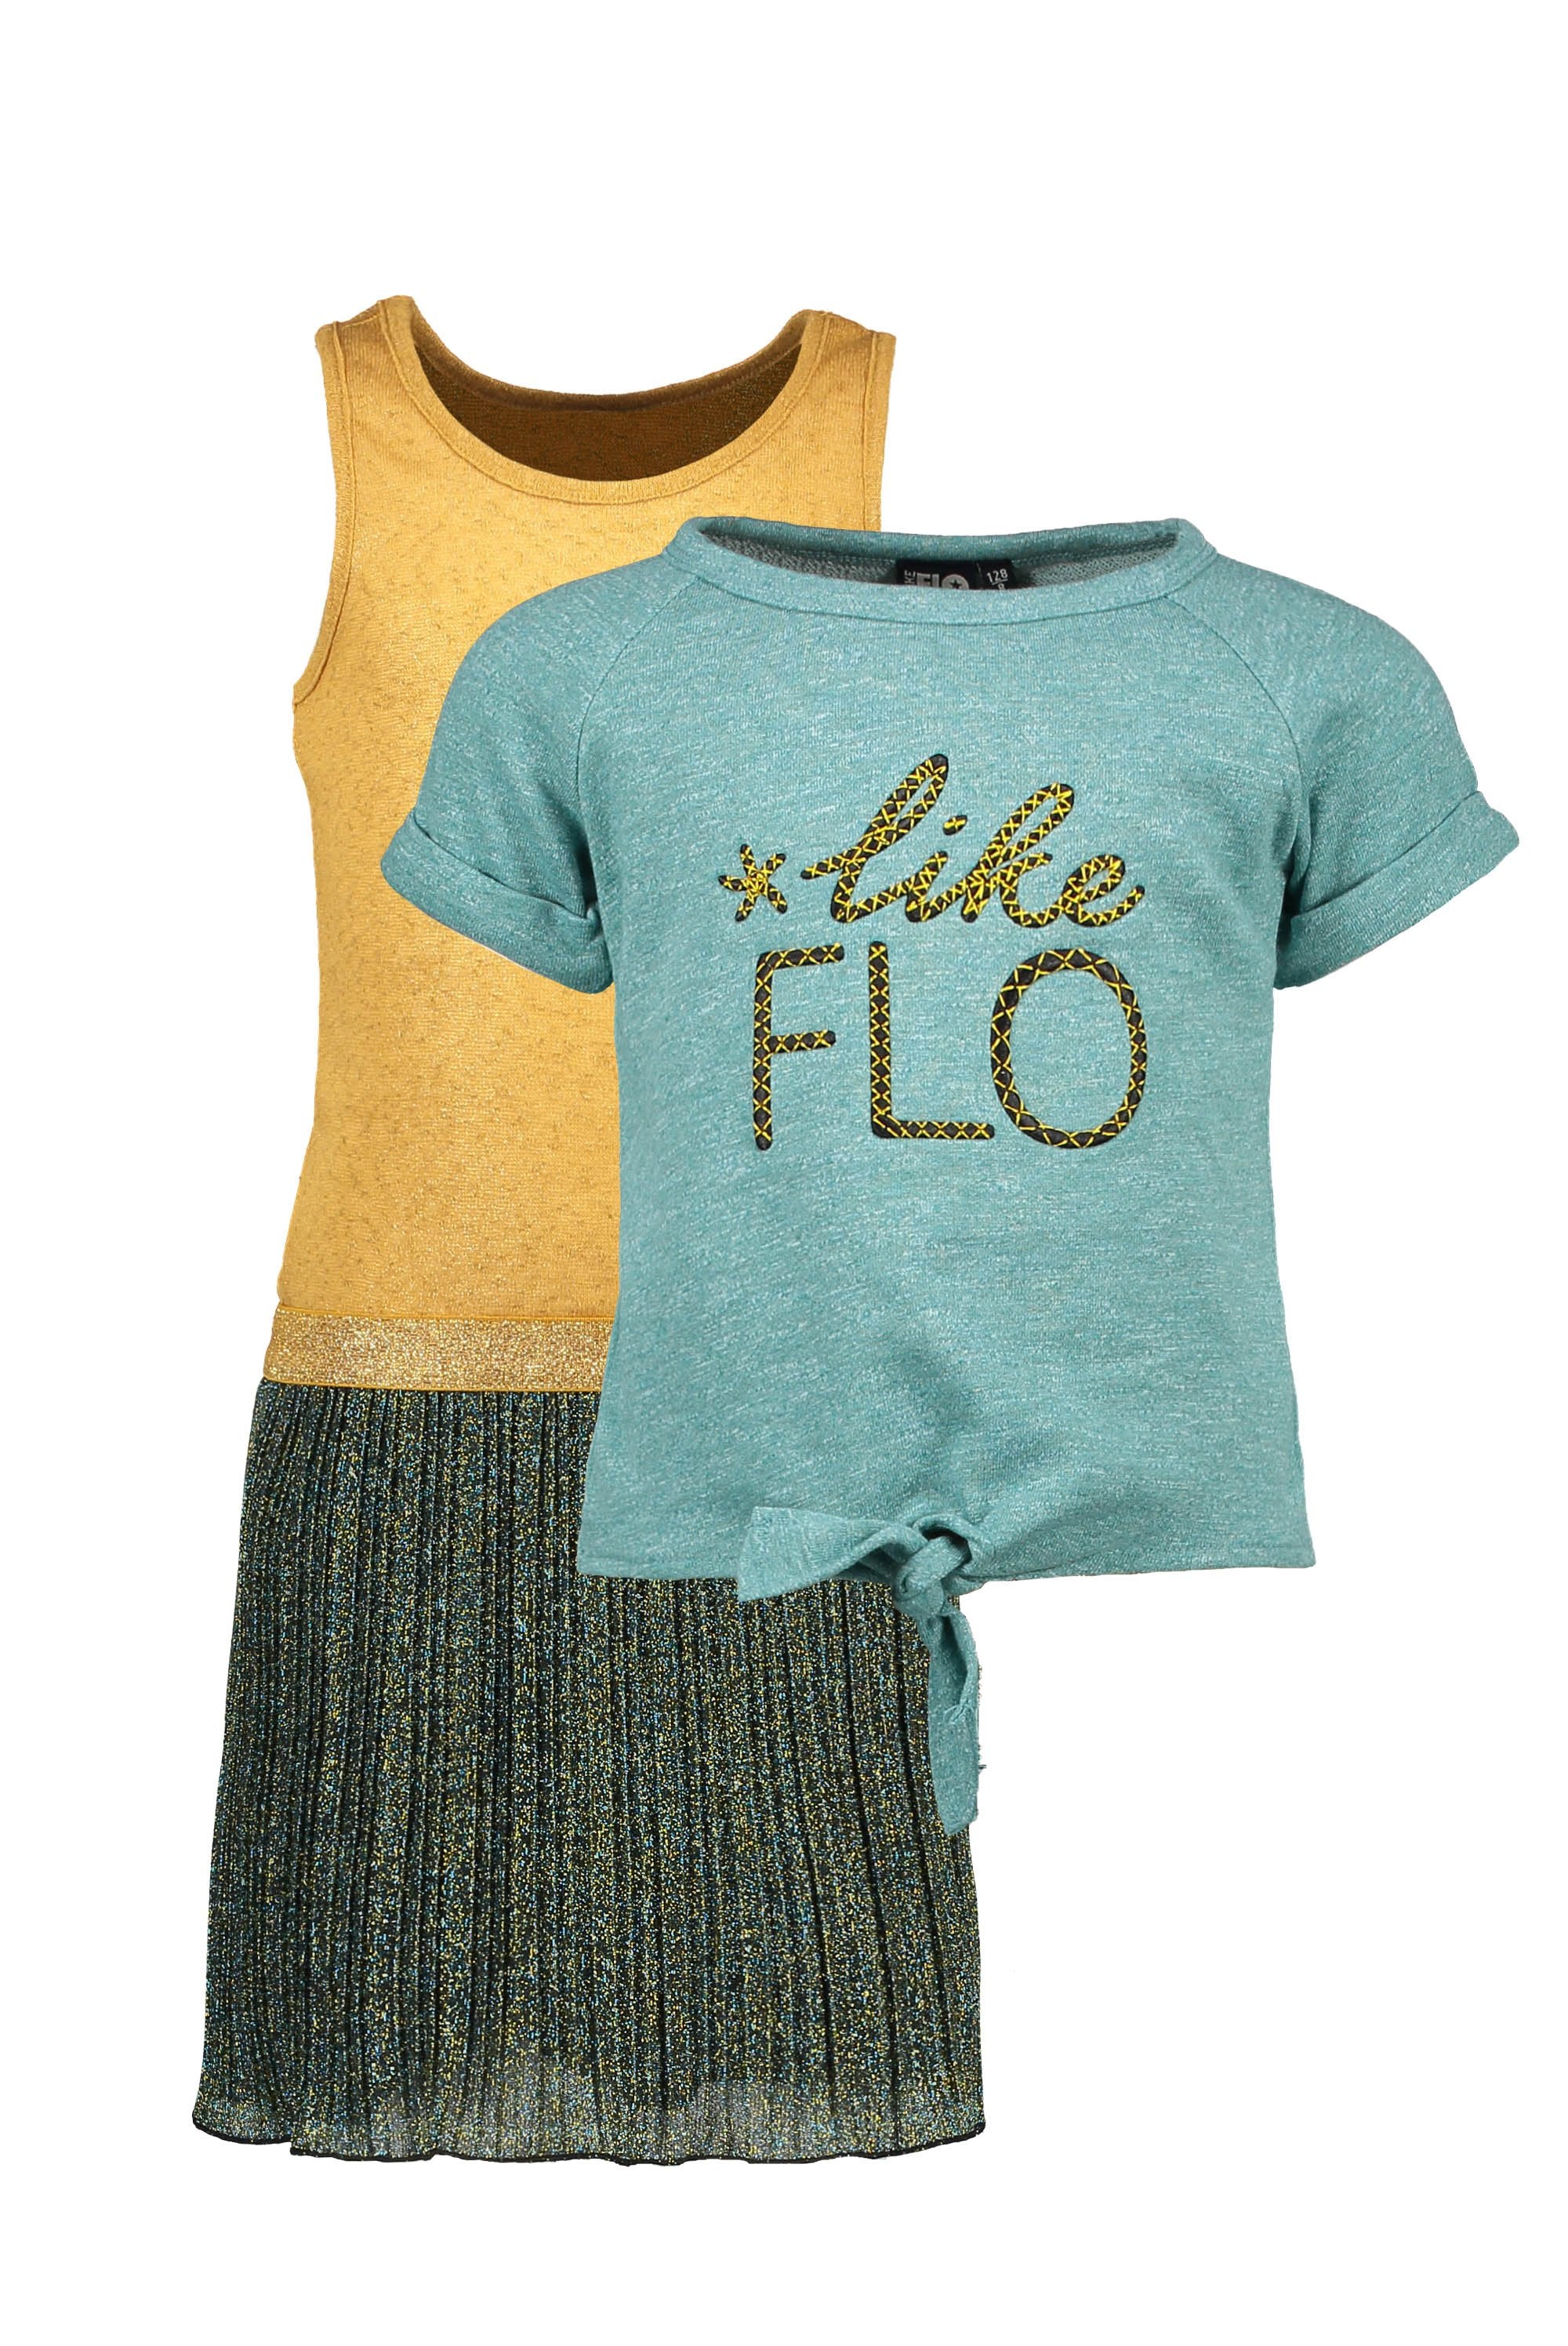 Meisjes Flo girls 2pc lurex plisse dress with sweat melee top van Flo in de kleur Ocean in maat 140.